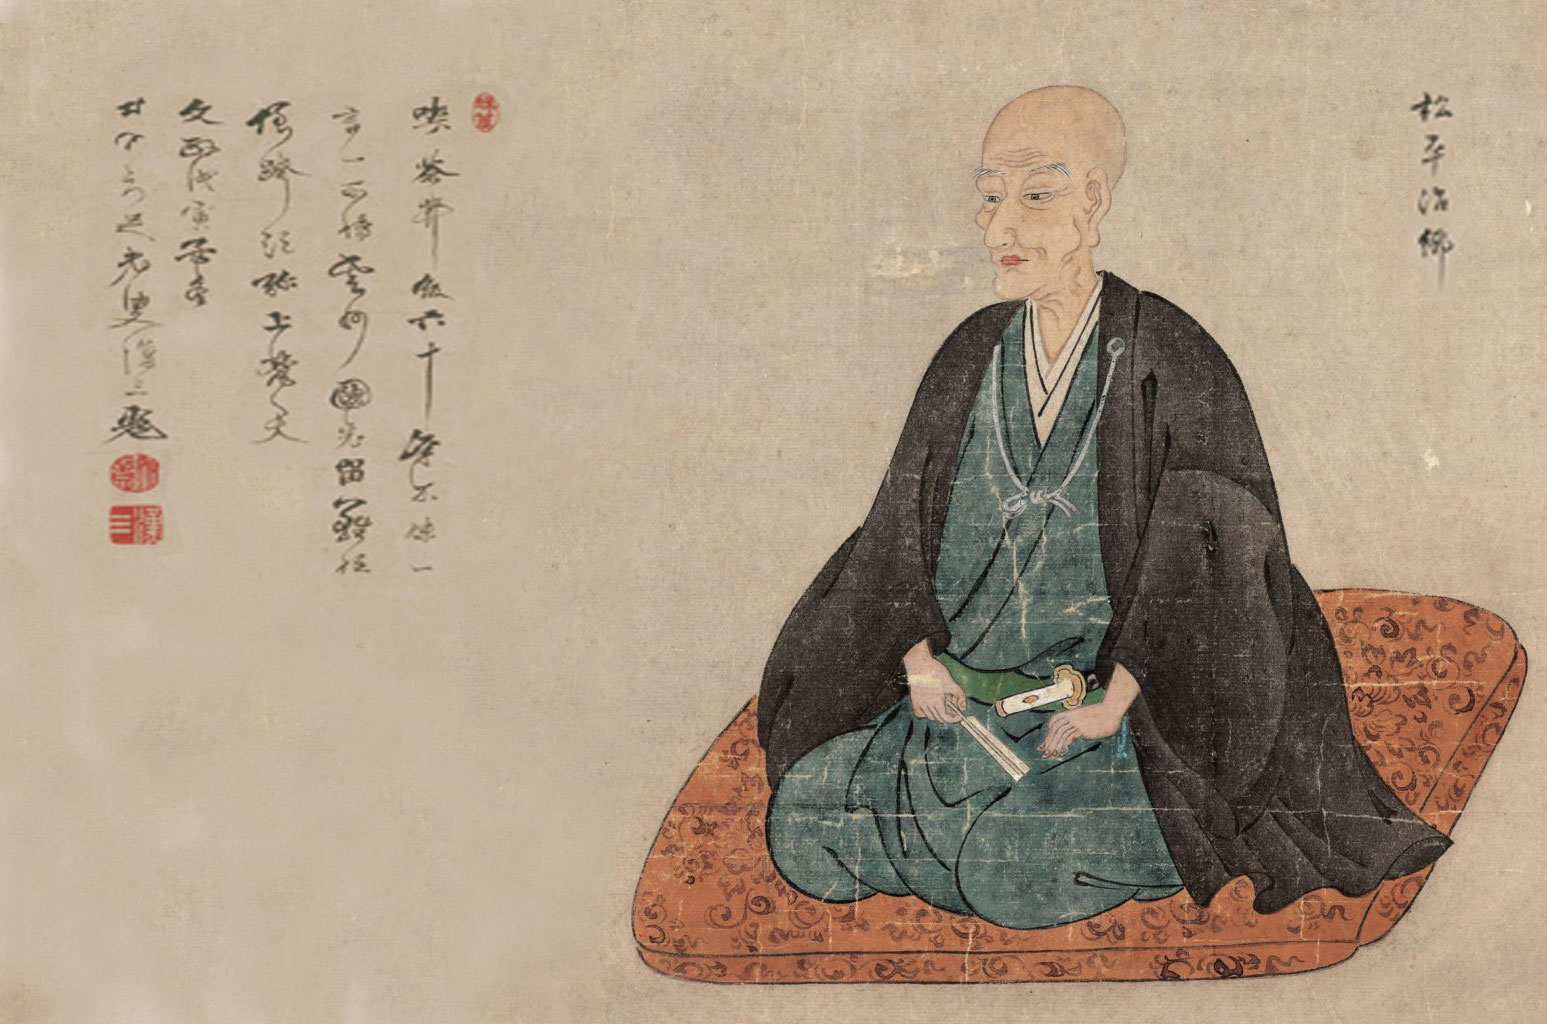 松江藩第七代藩主，歷史上著名的「茶人」── 松平治鄉（1751-1818）畫像。(島根・月照寺藏)